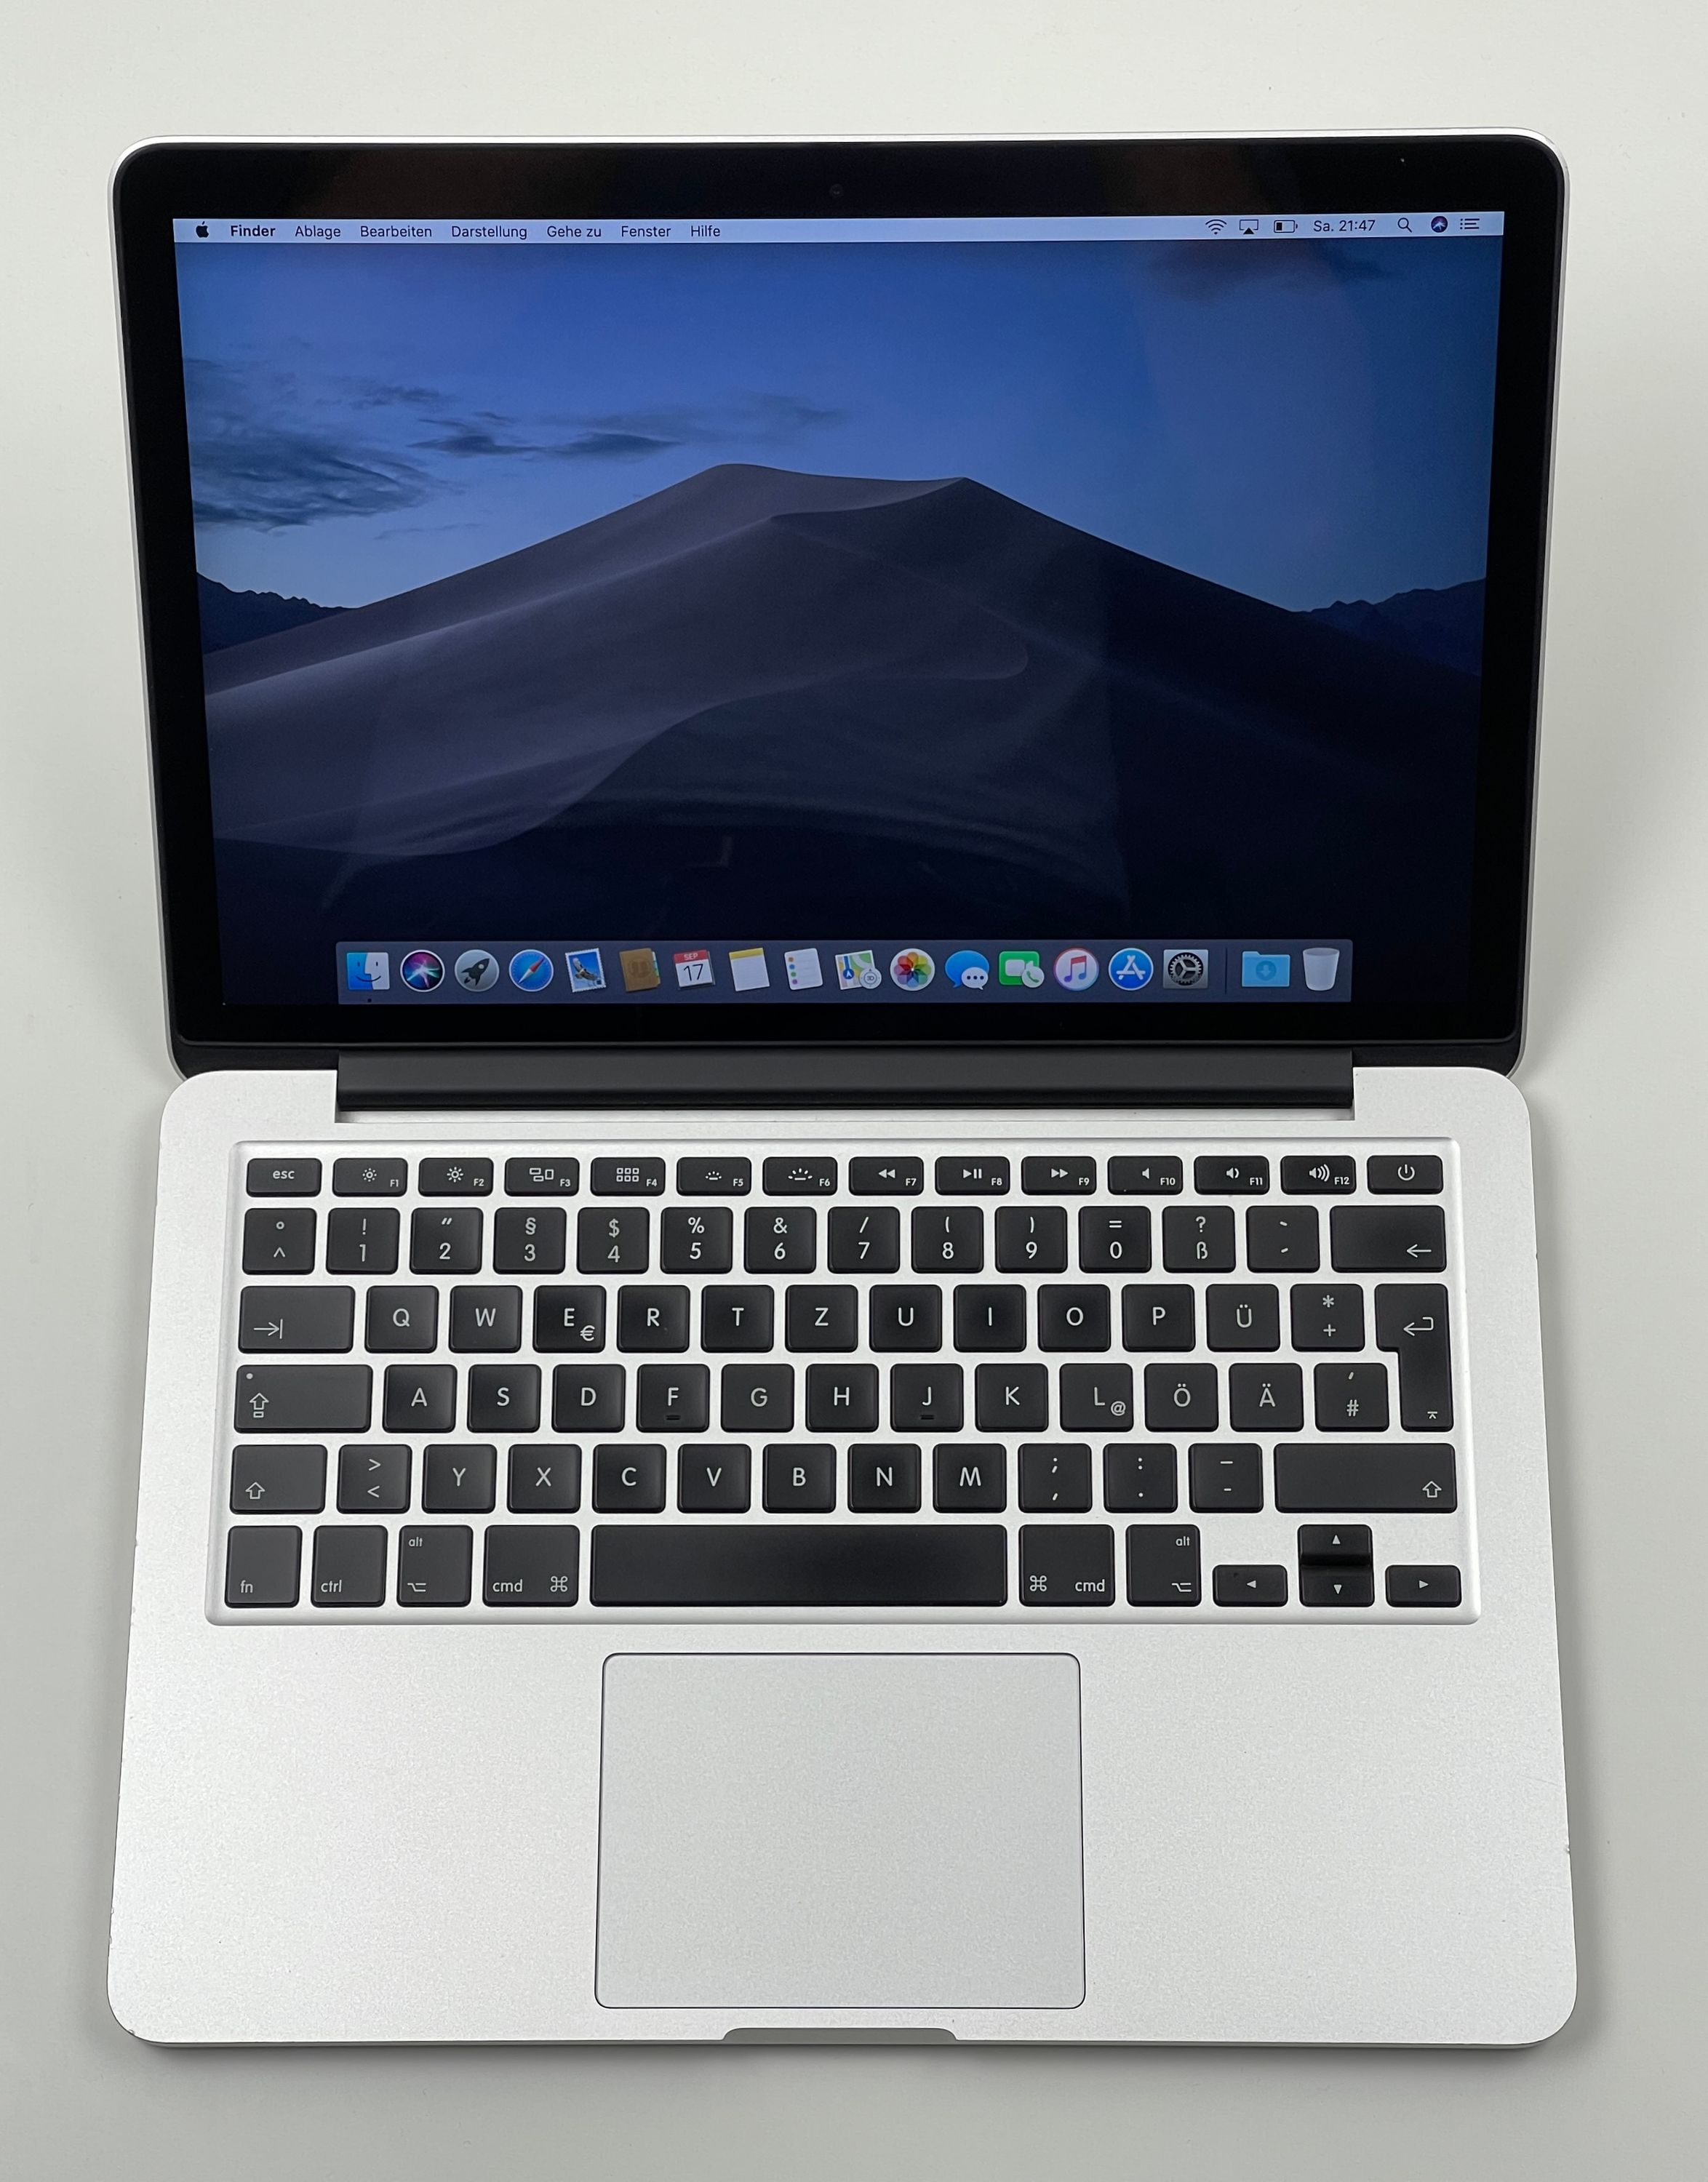 Apple MacBook Pro Retina 13,3“ i5 2,7 Ghz 128 GB SSD 8 GB Ram SILBER 2015 MF839D/A